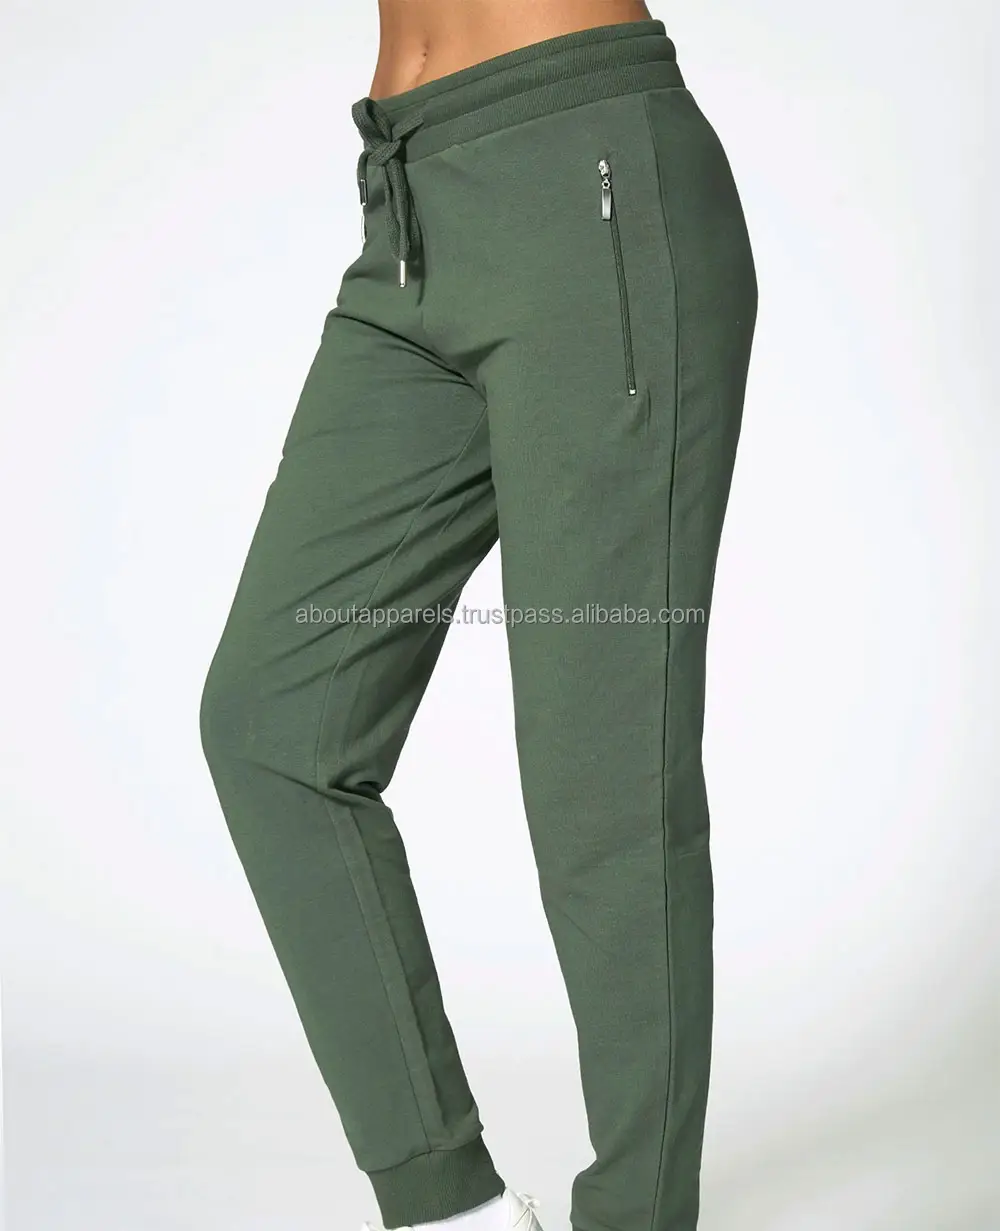 Nuovi prodotti di vendita caldi pantaloni della tuta In cotone 100 realizzati In cina a basso prezzo, pantaloni da jogging traspiranti In cotone